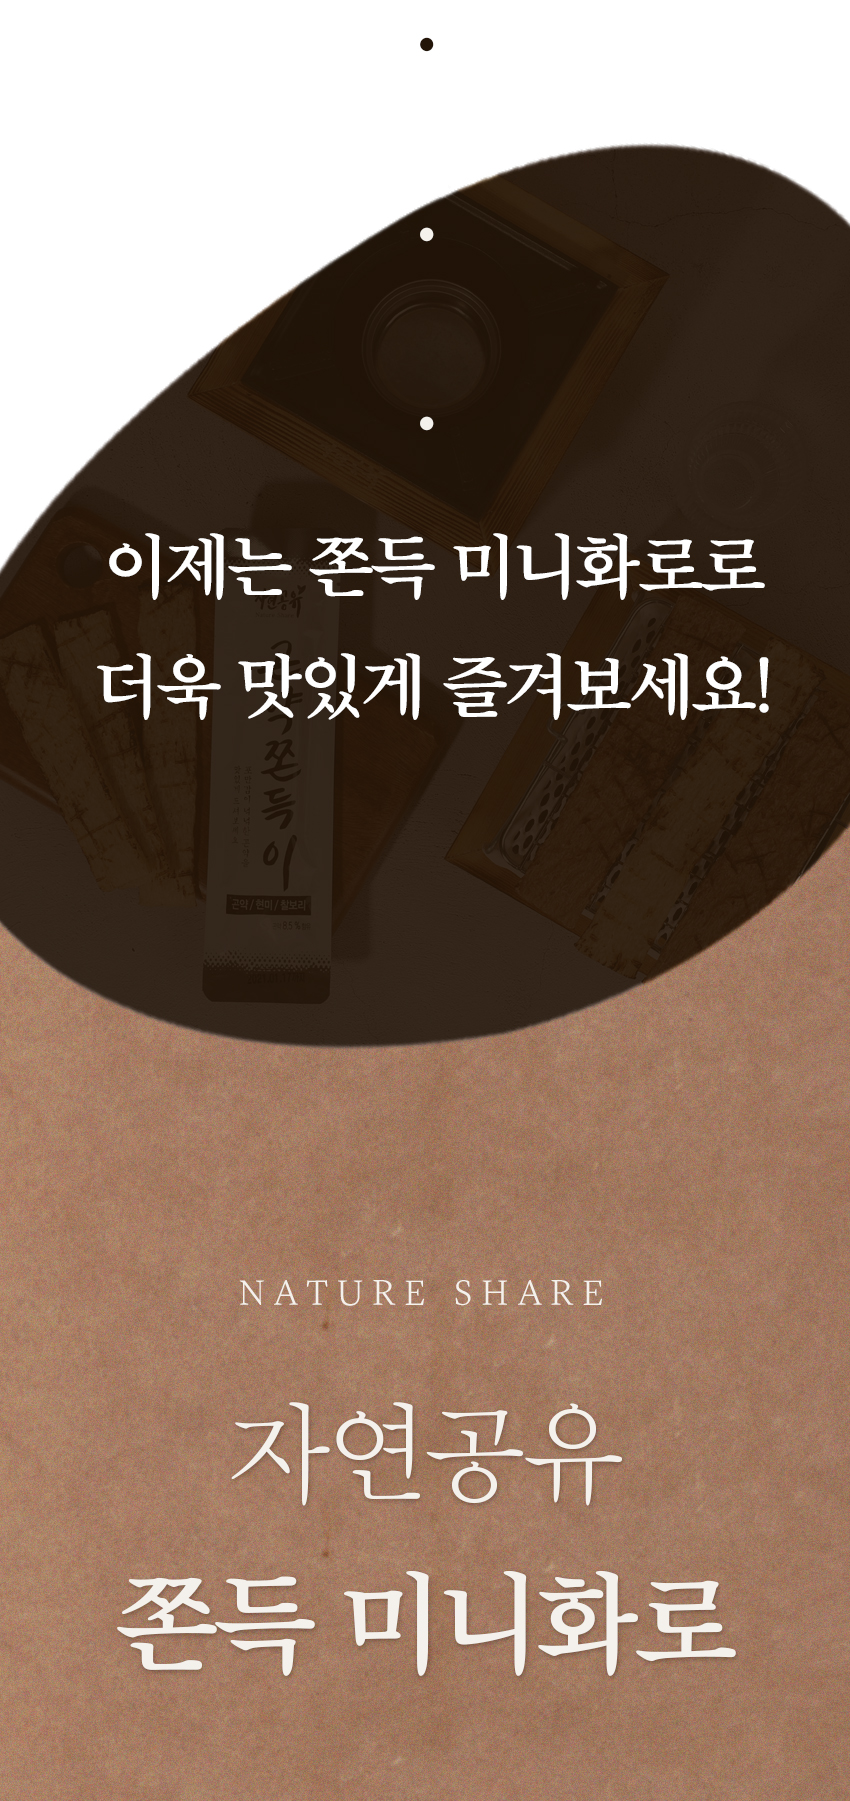 韓國食品-[Nature Share] Mini Stove